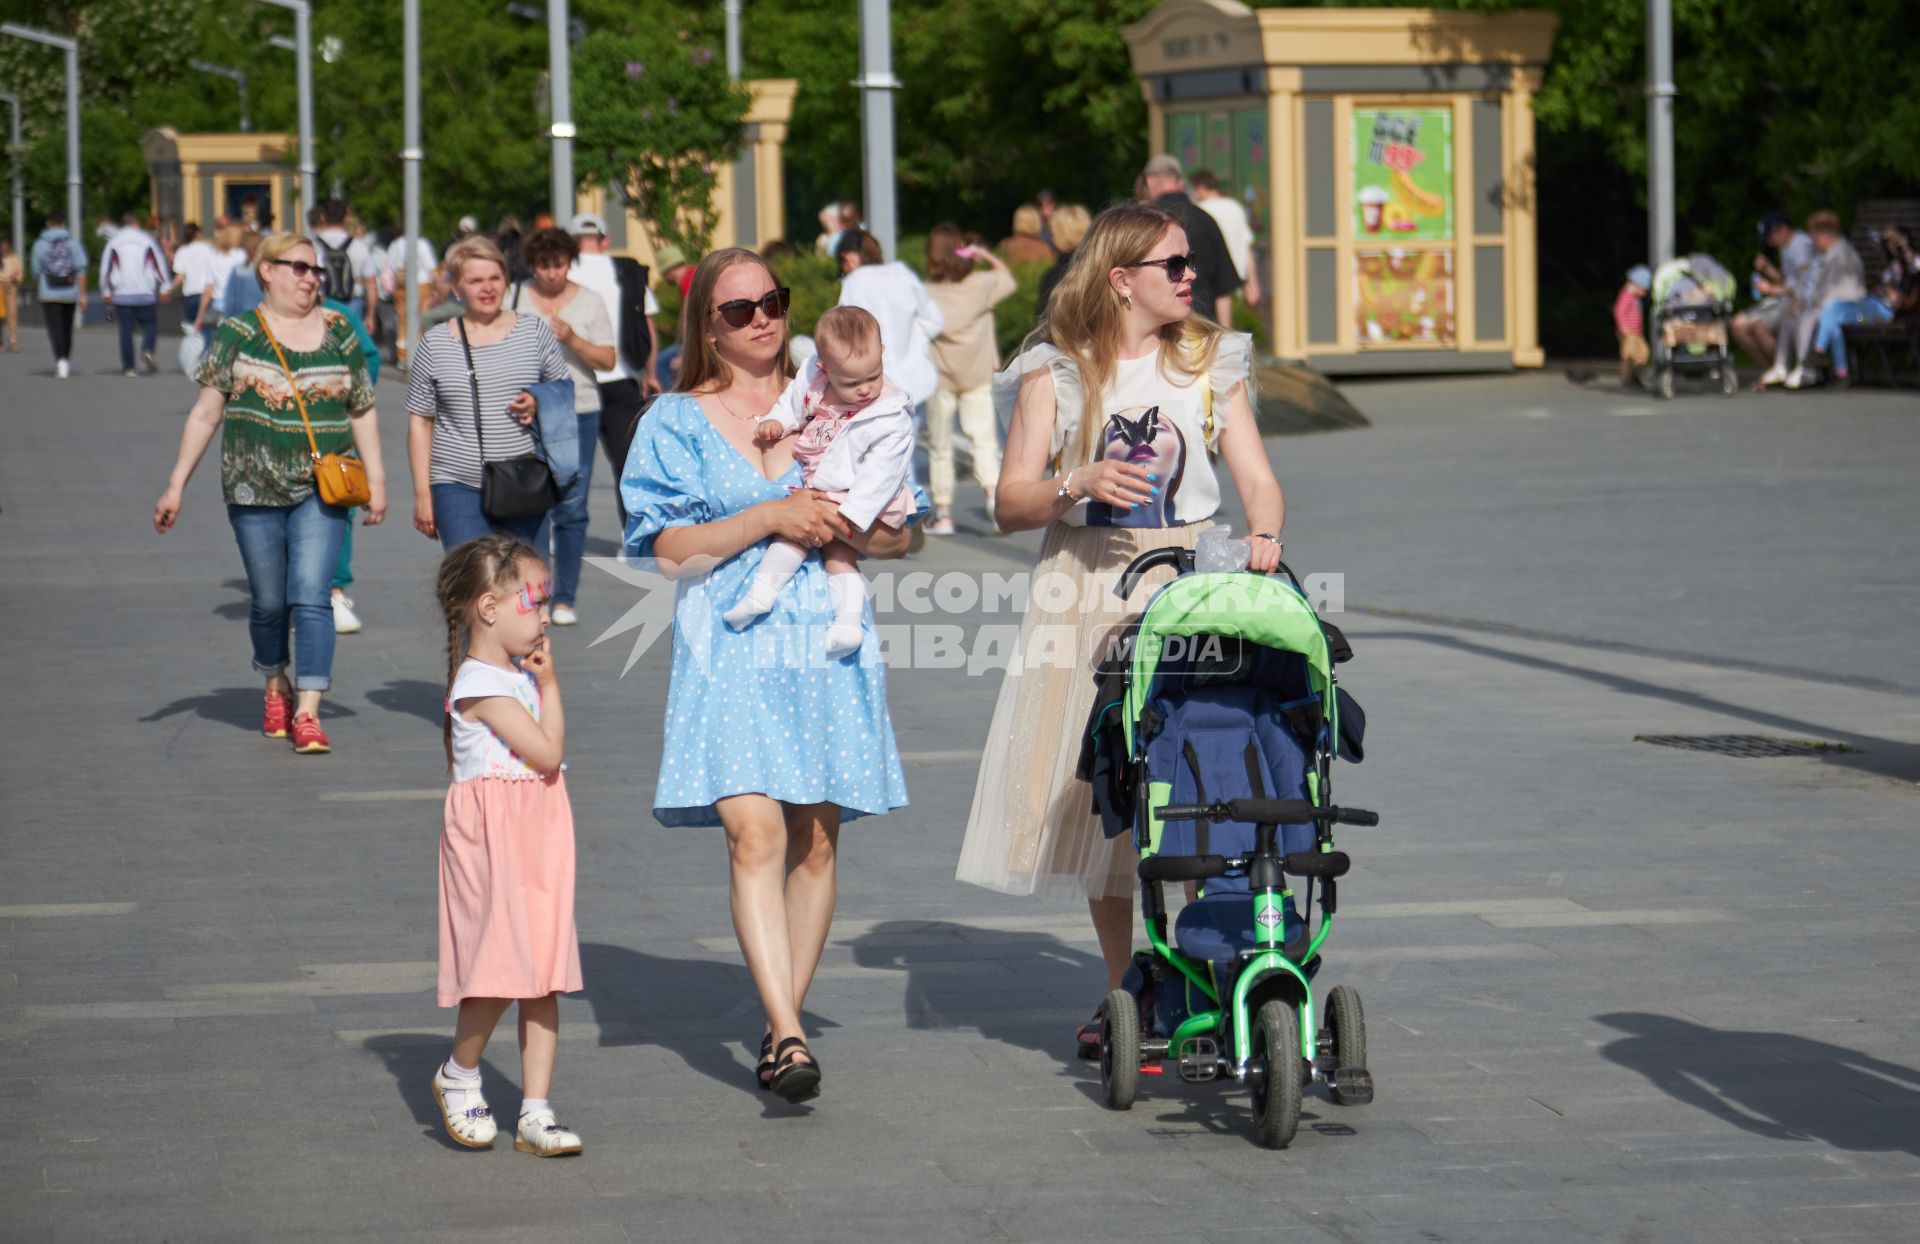 Пермь. Мамы с детьми гуляют по улице.